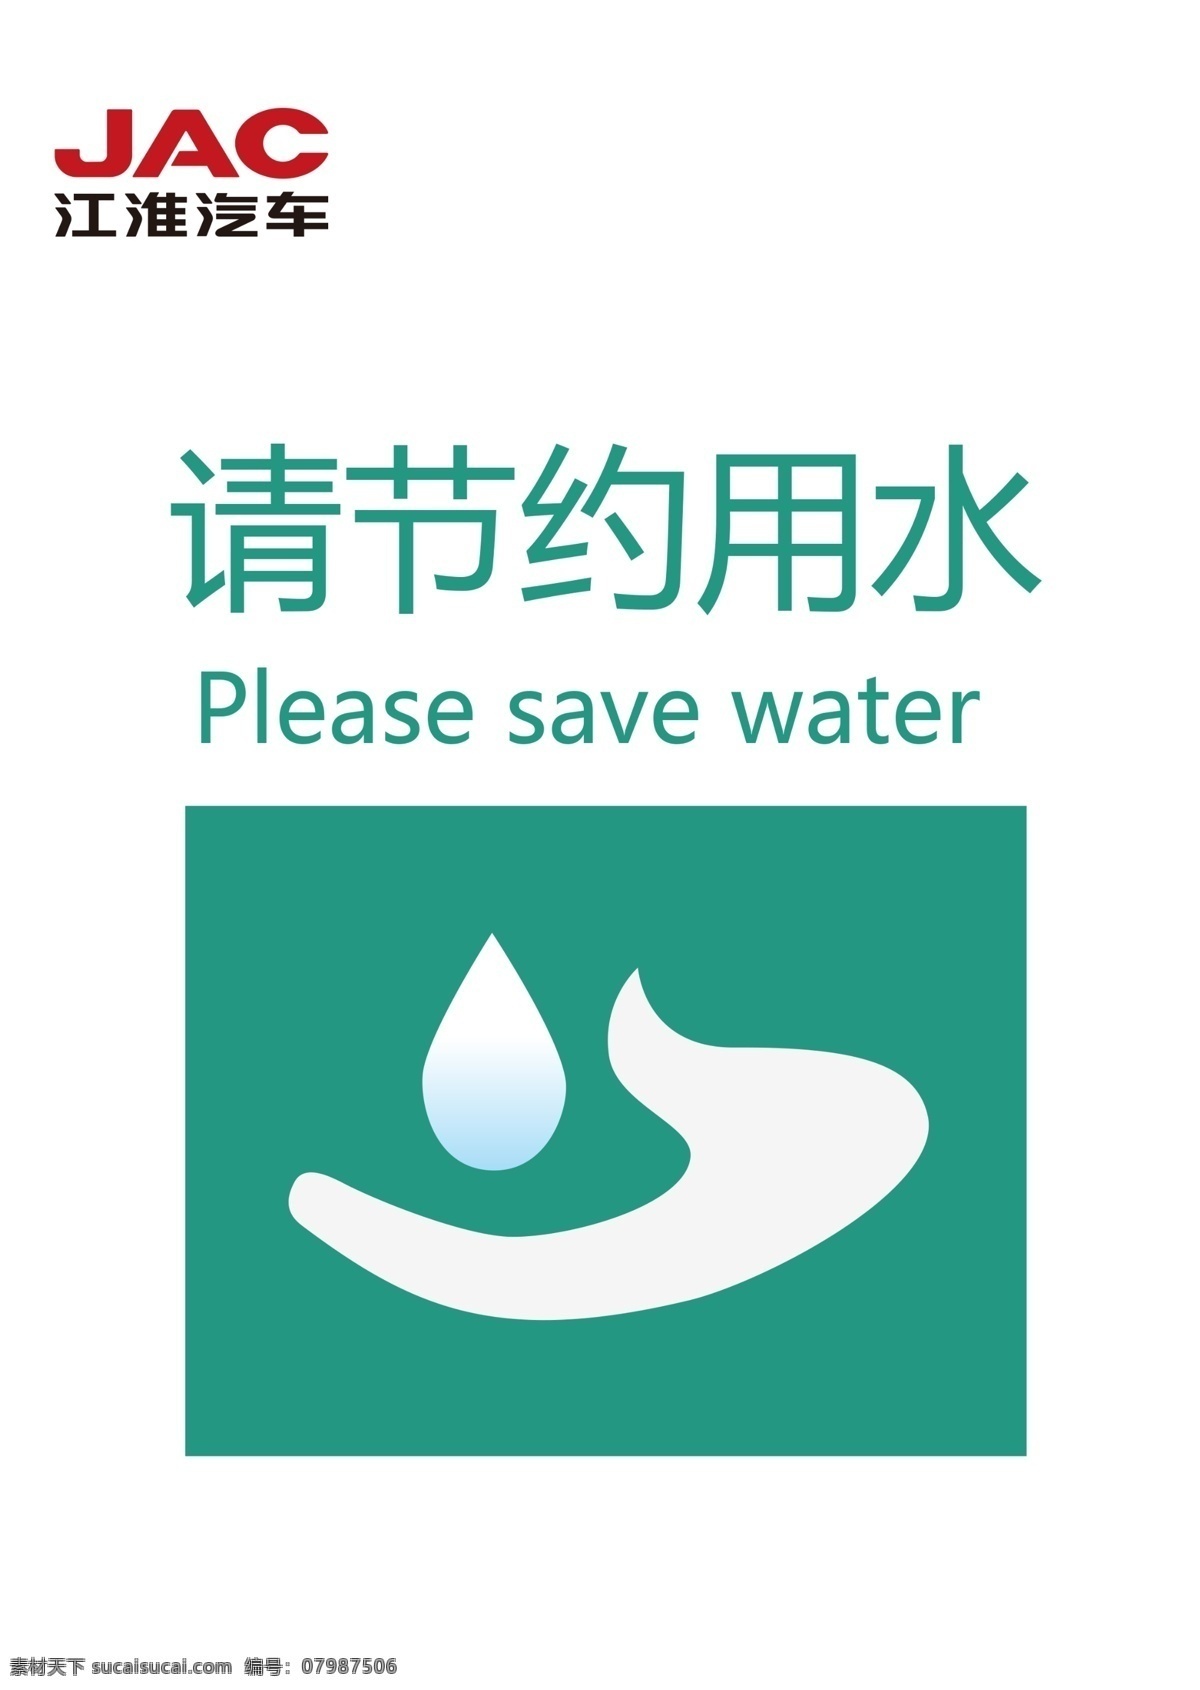 江淮汽车 江淮标志 请节约用水 节约 节约用水 水滴 图标